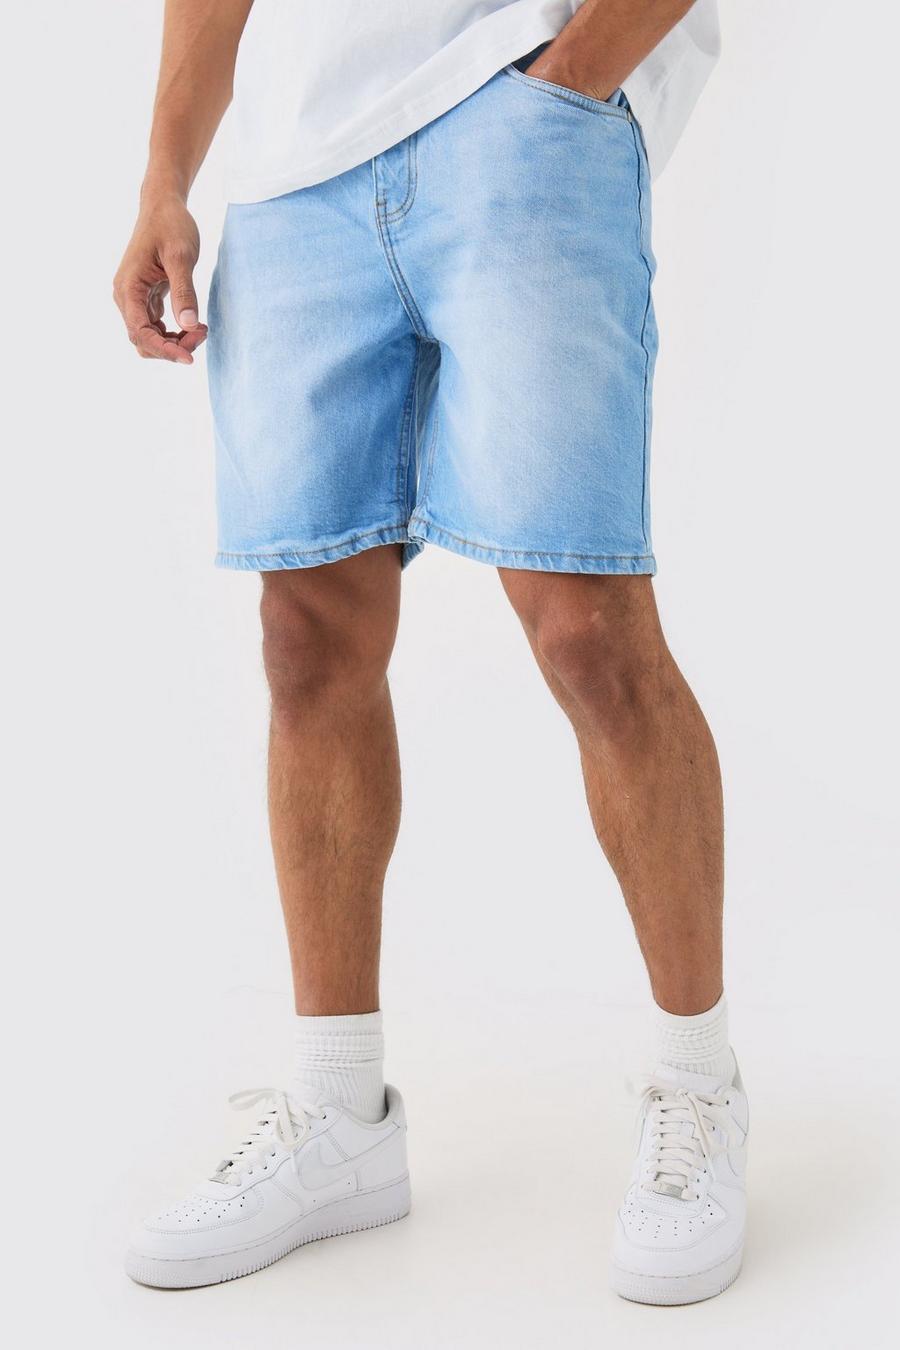 Pantalones cortos vaqueros holgados sin tratar en azul claro, Light blue